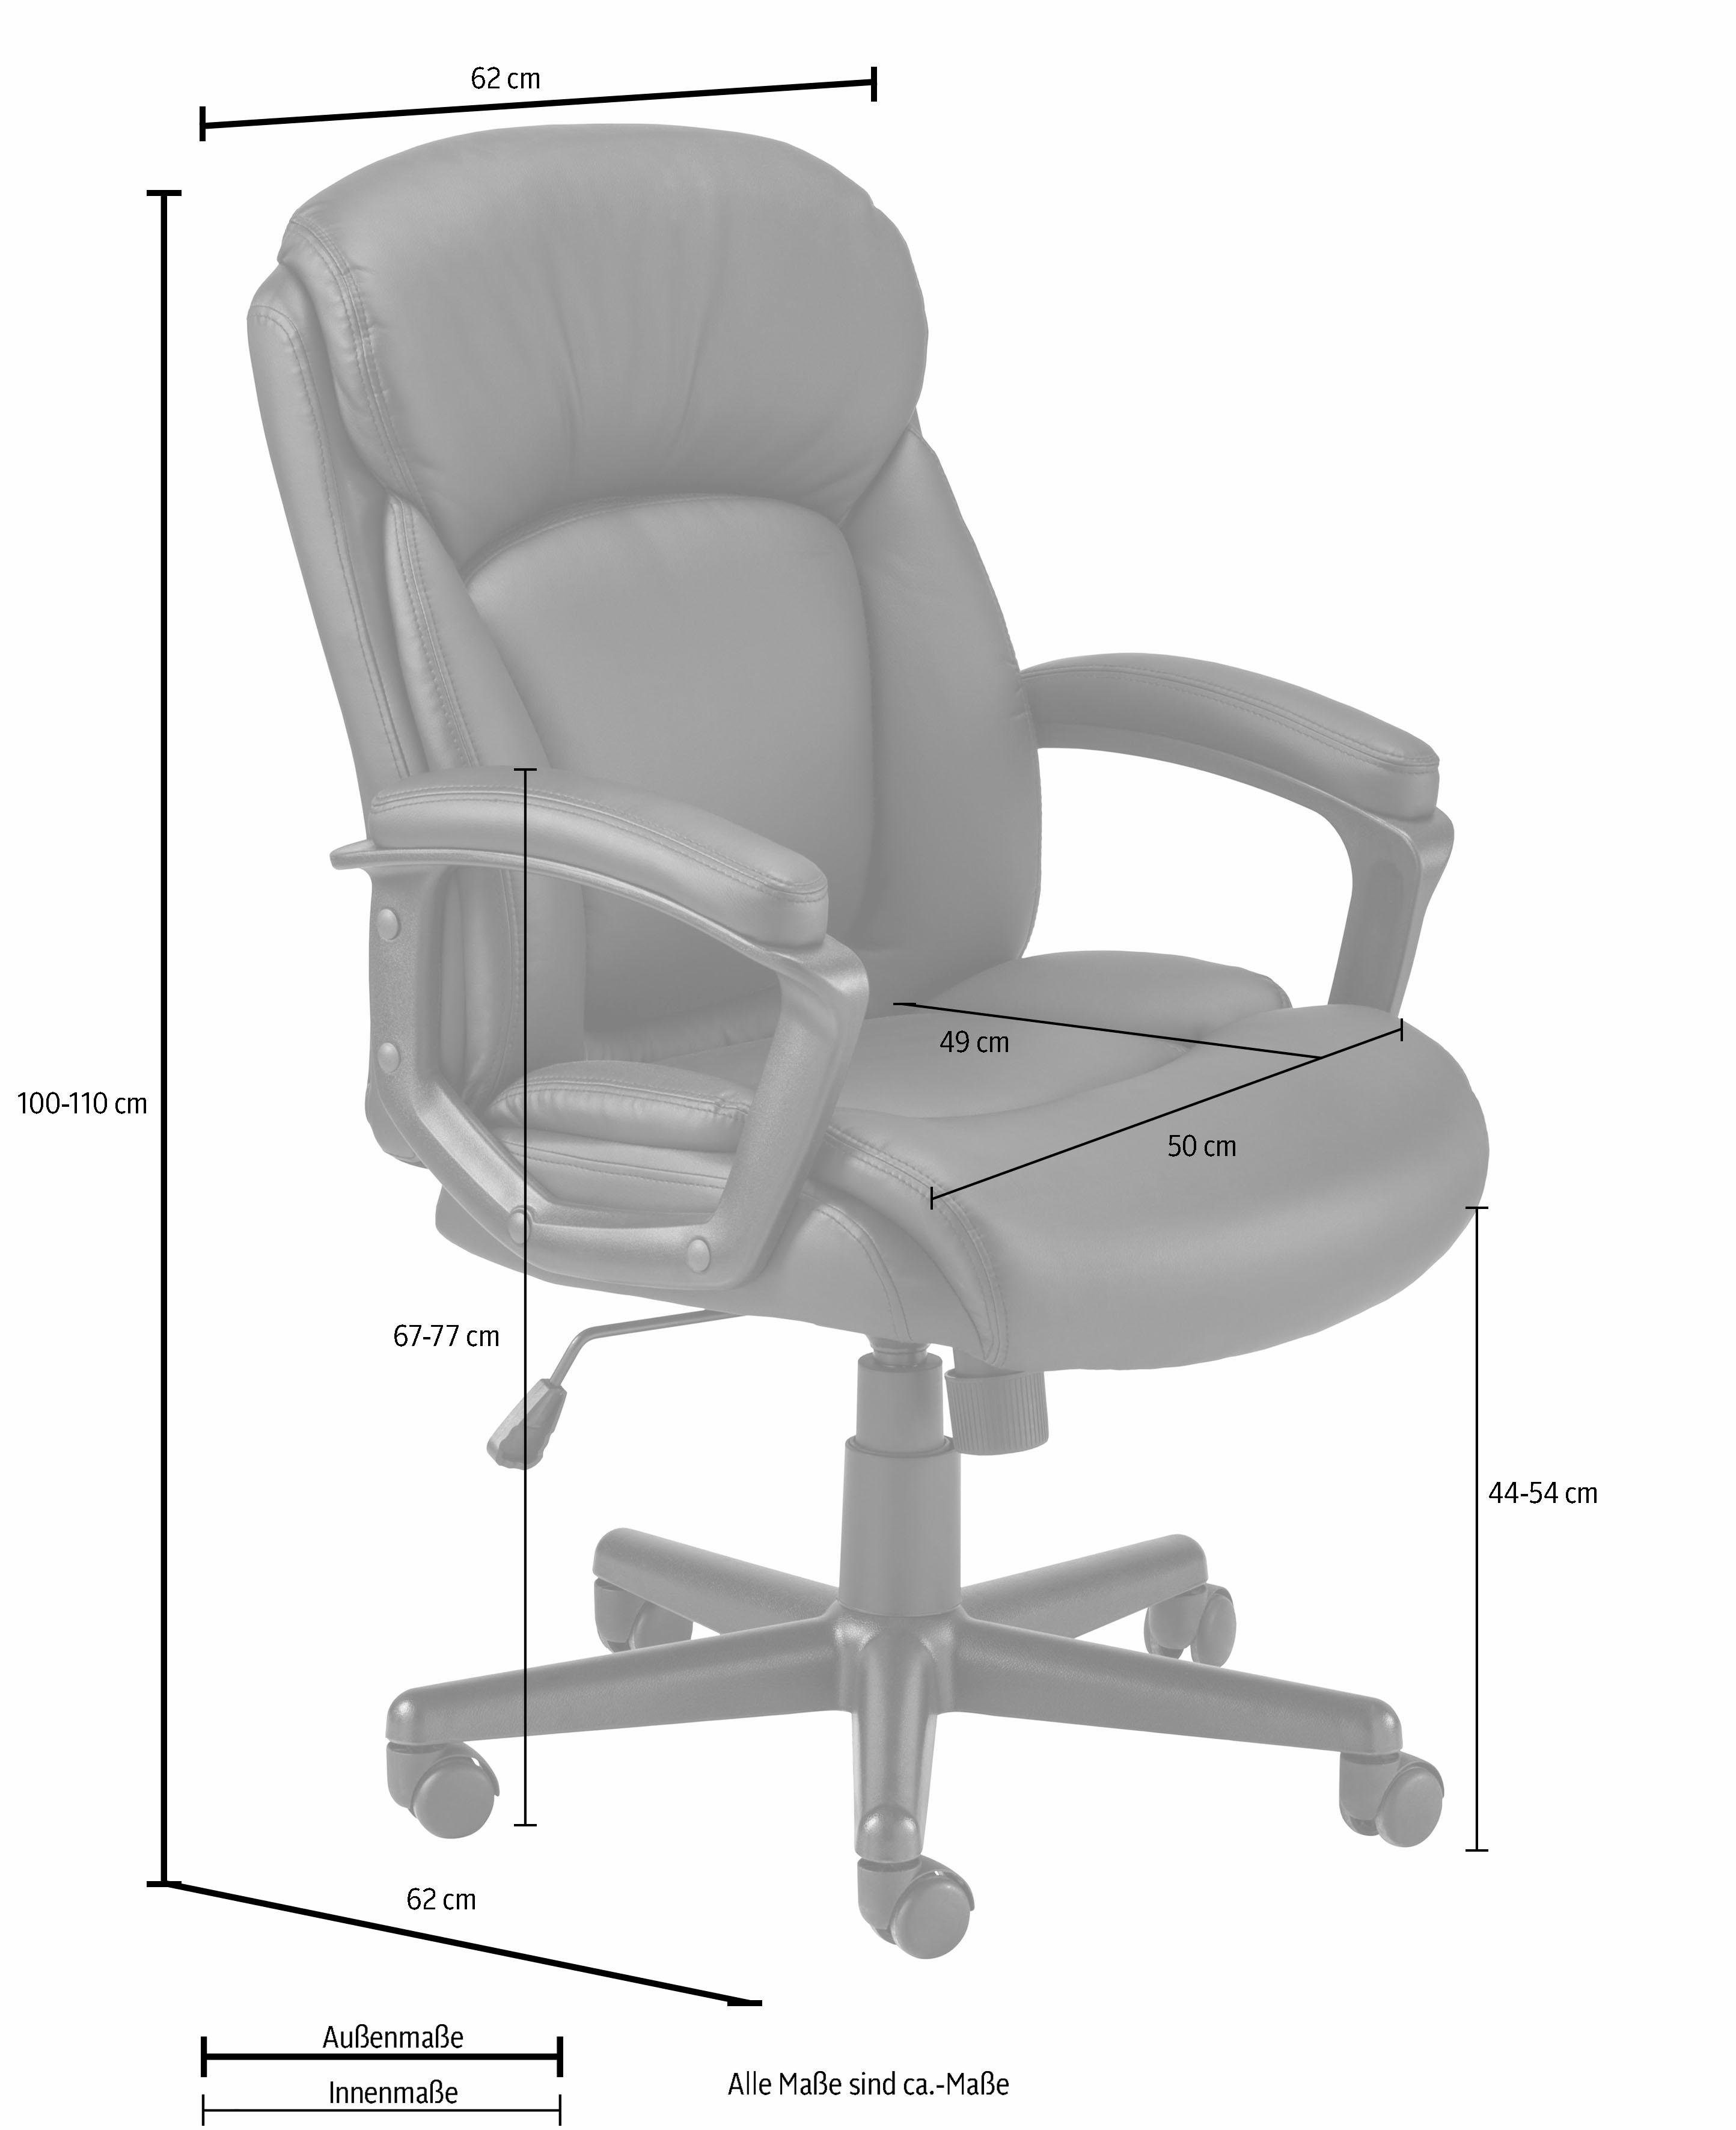 ergonomischen INOSIGN komfortable Chefsessel, viele Julia, Bürostuhl Polsterung, Funktionen